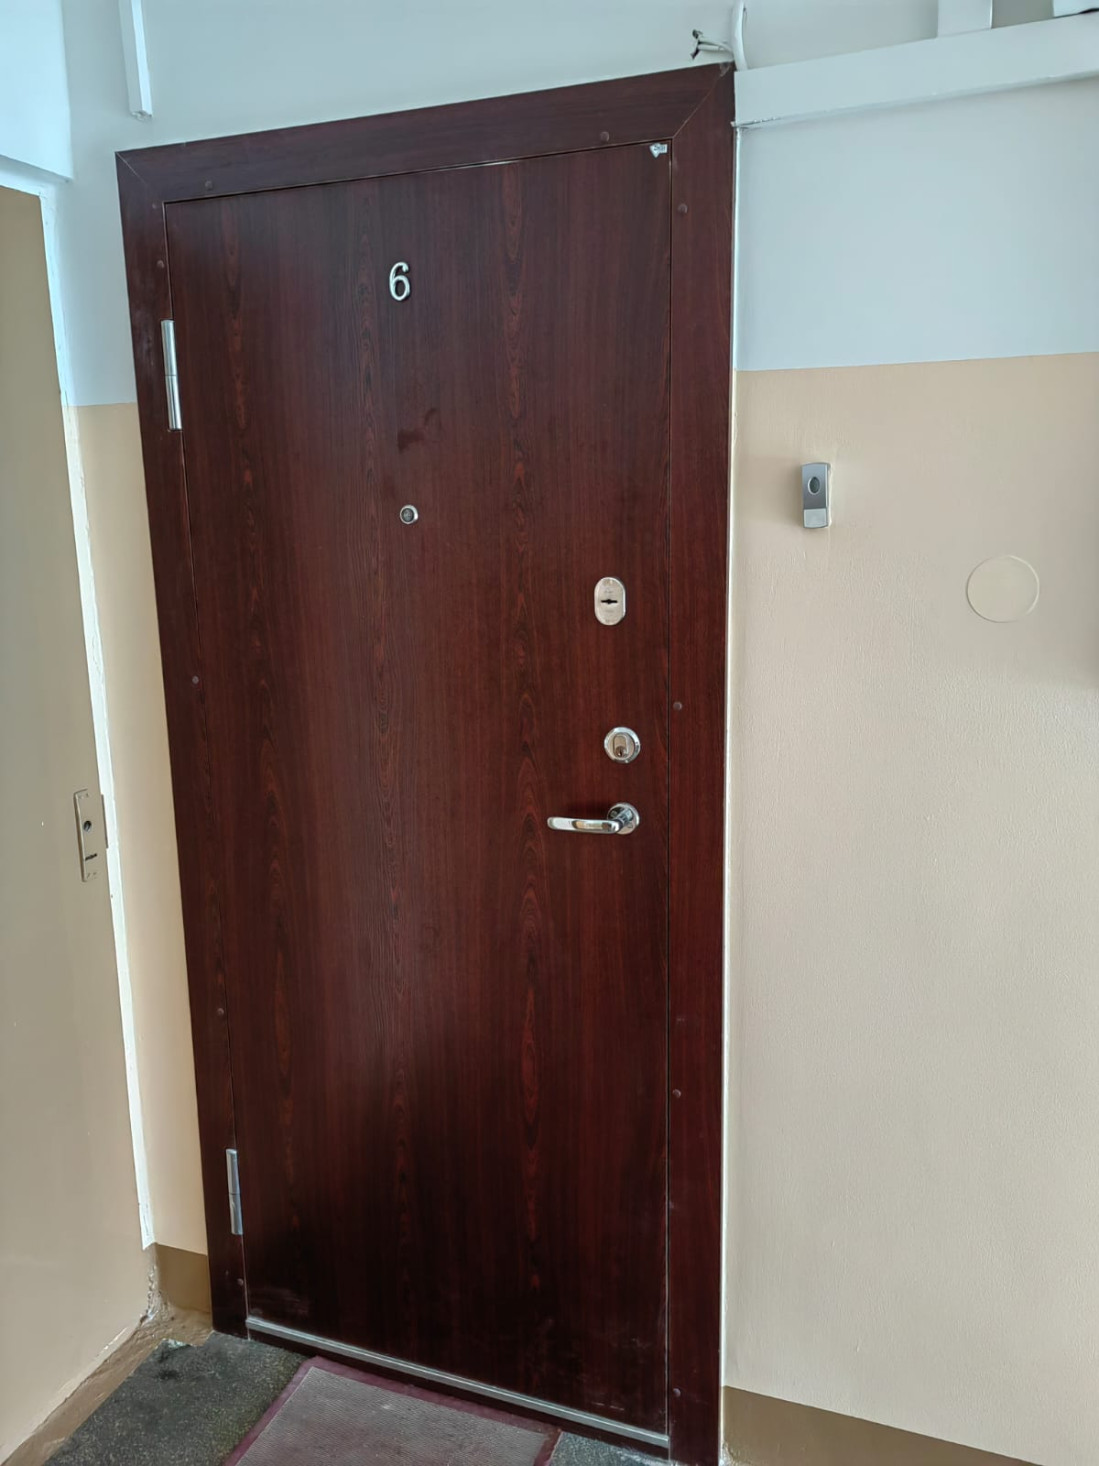 The apartment's iron door has an imitation wood surface